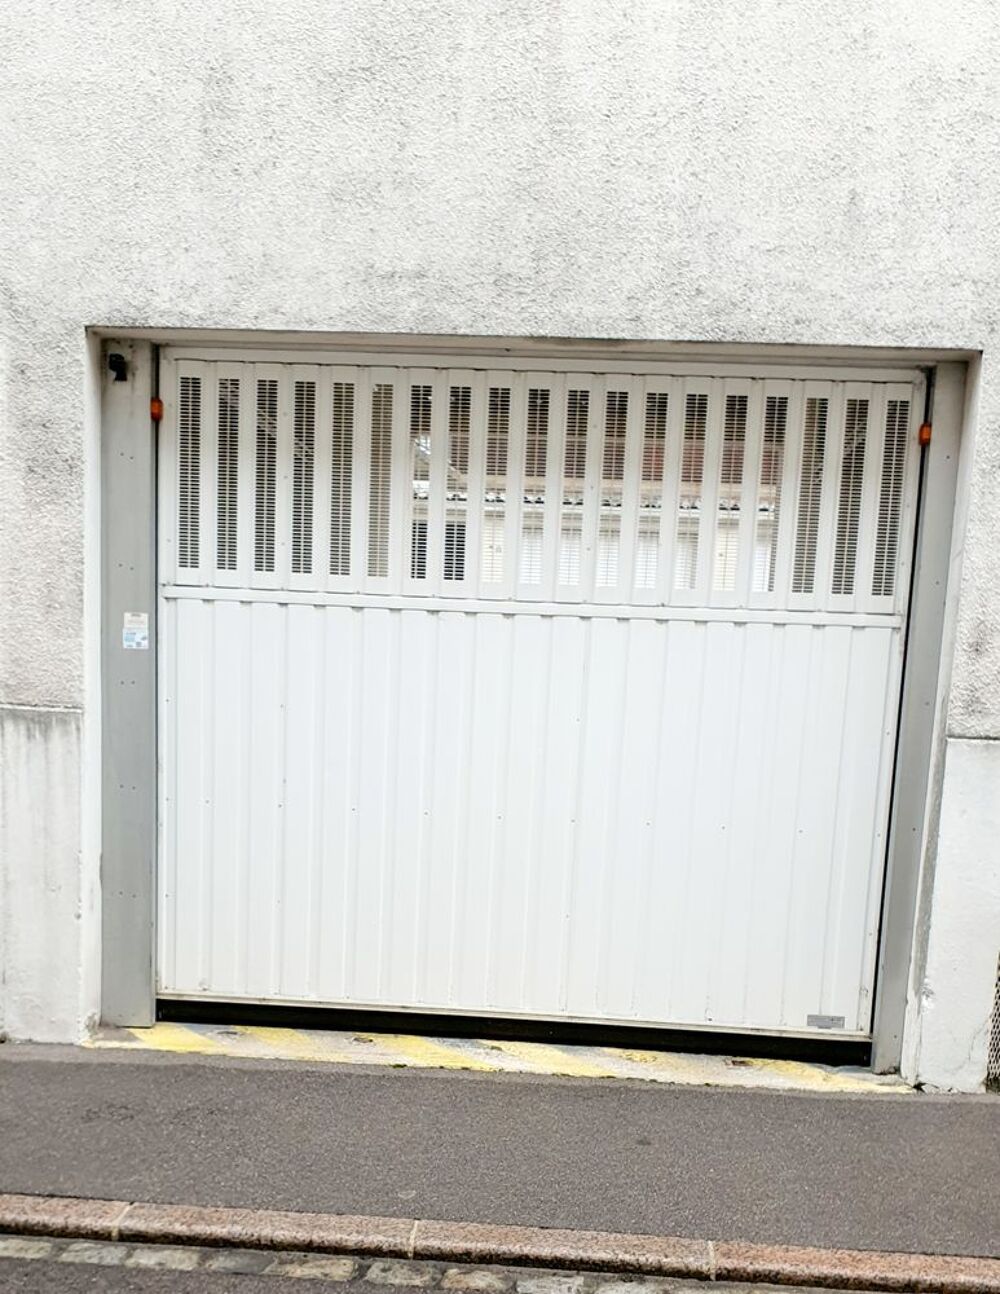 Location Parking/Garage Boxe garage 15m2 ferm scuris  DOUBLE  PORTE  Bd du 14 Jui Troyes